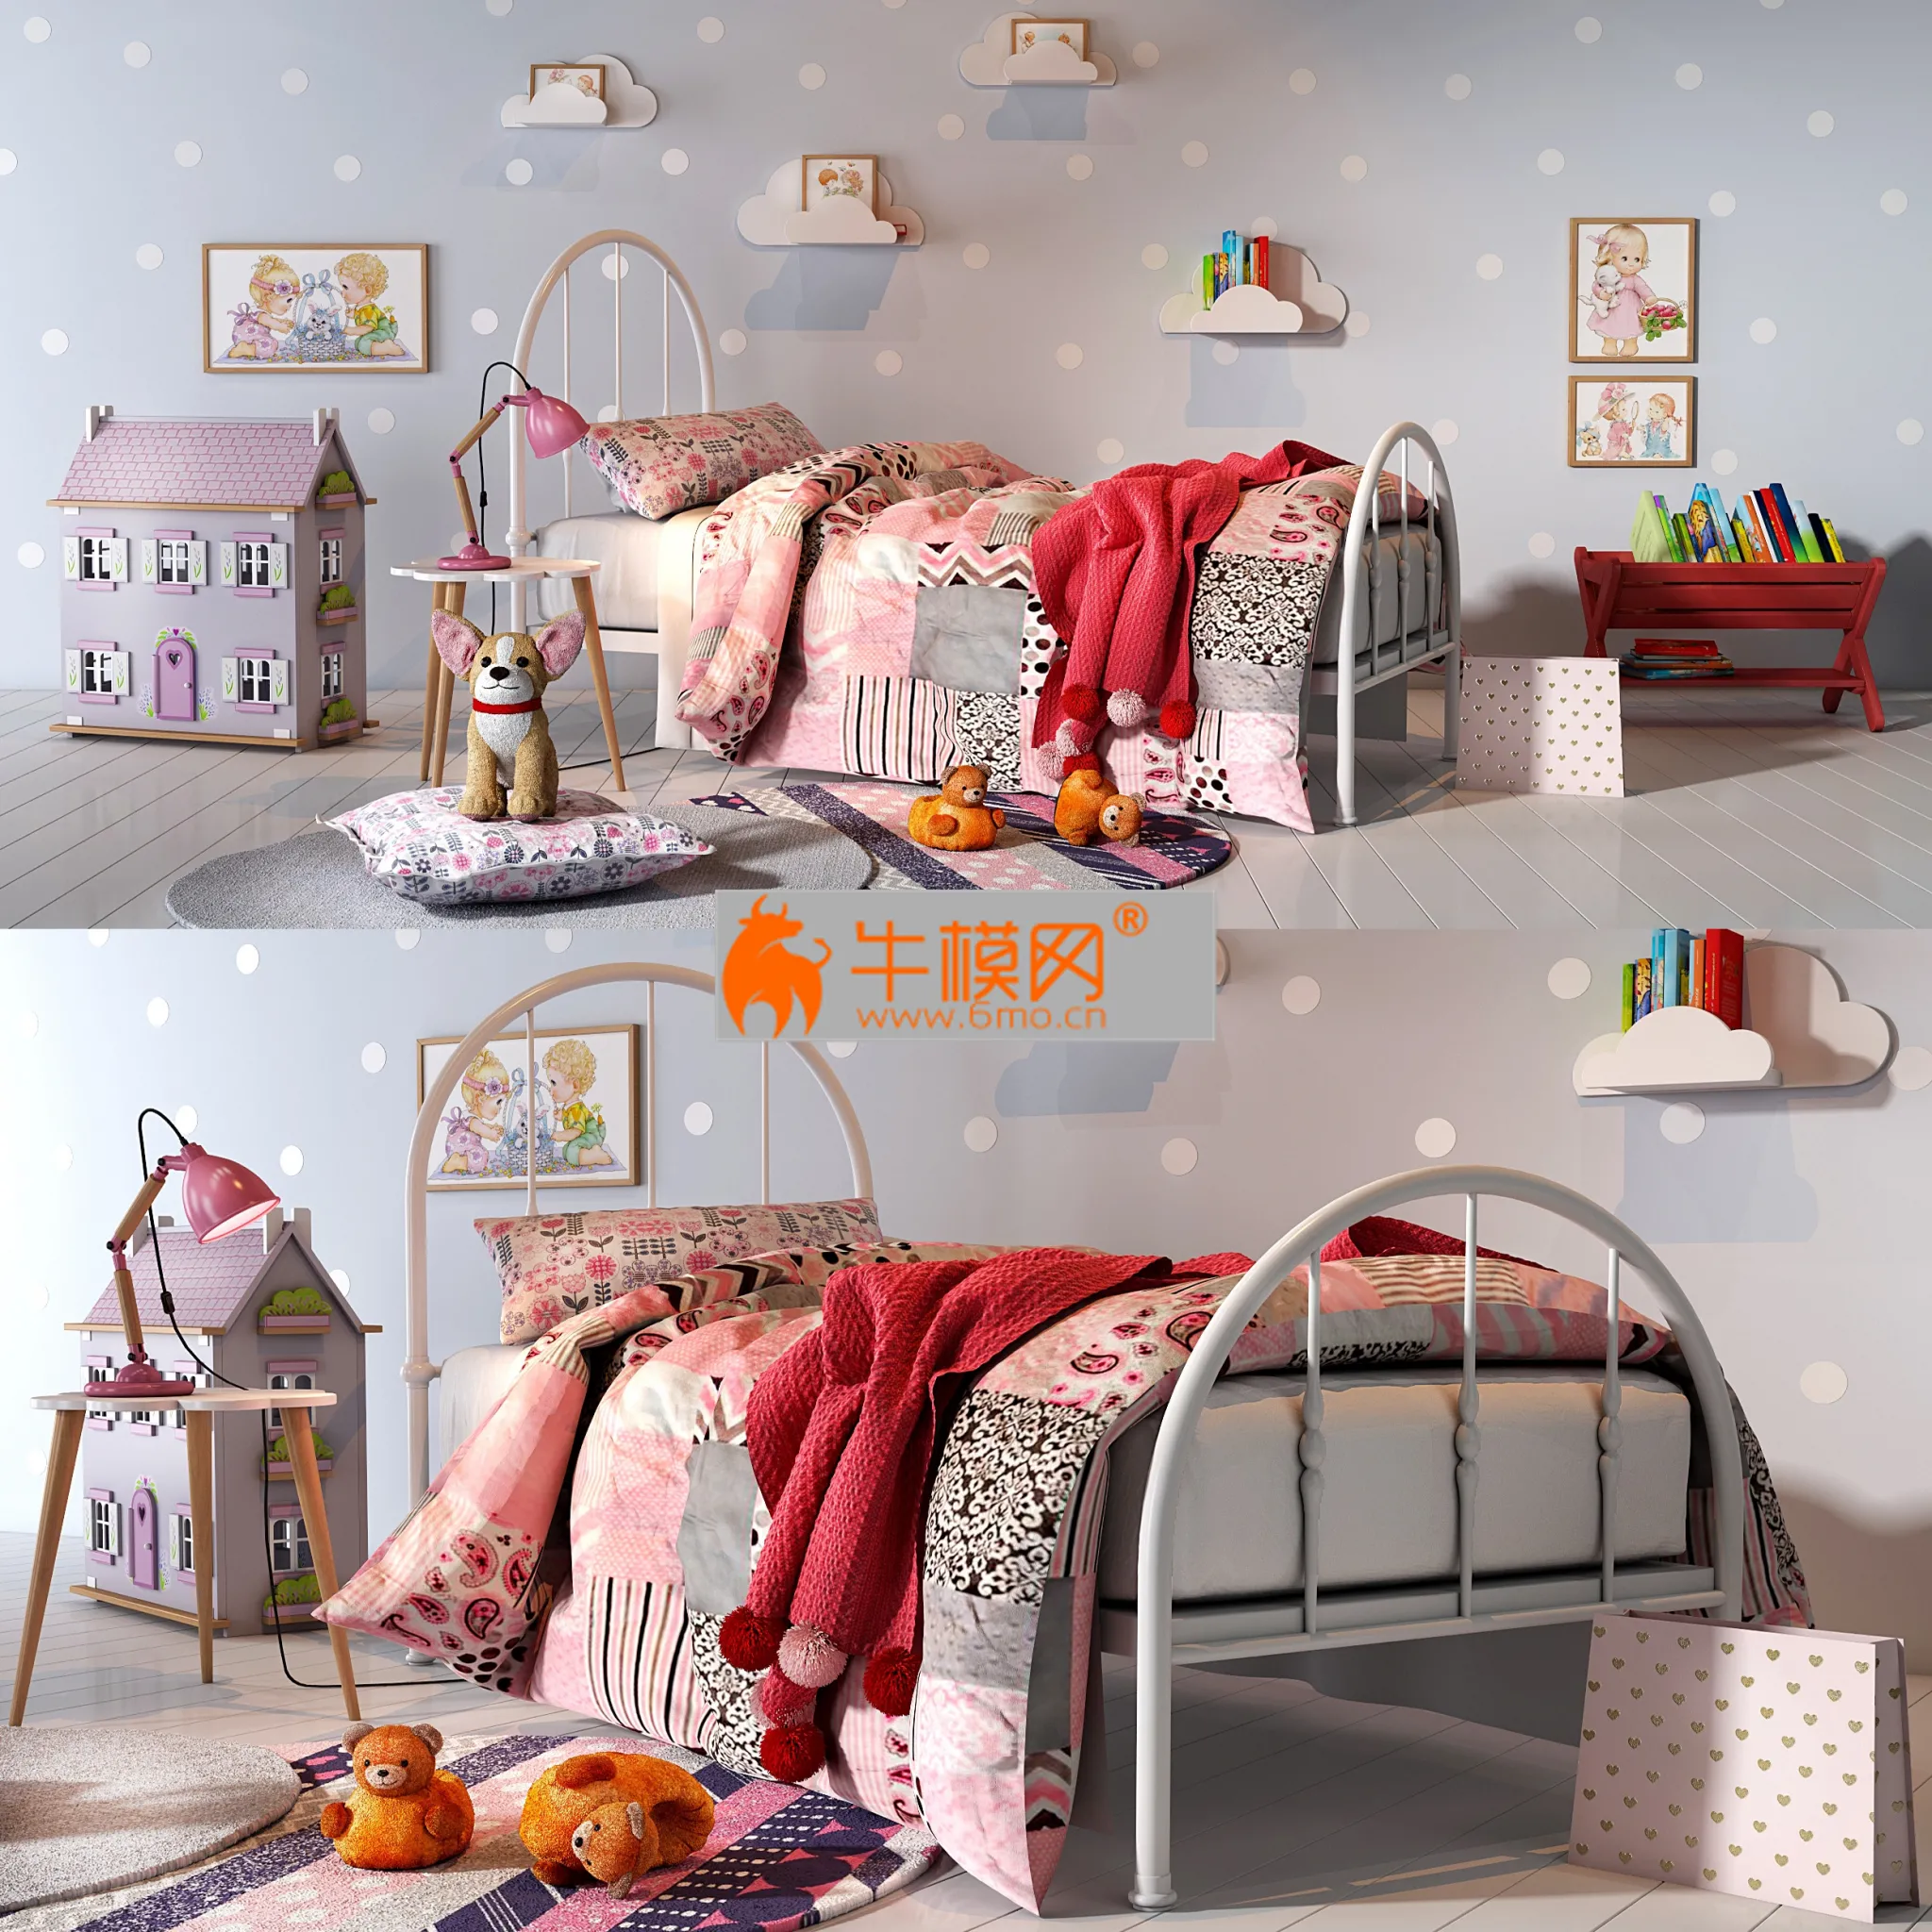 Girl bedroom set_01 – 3735